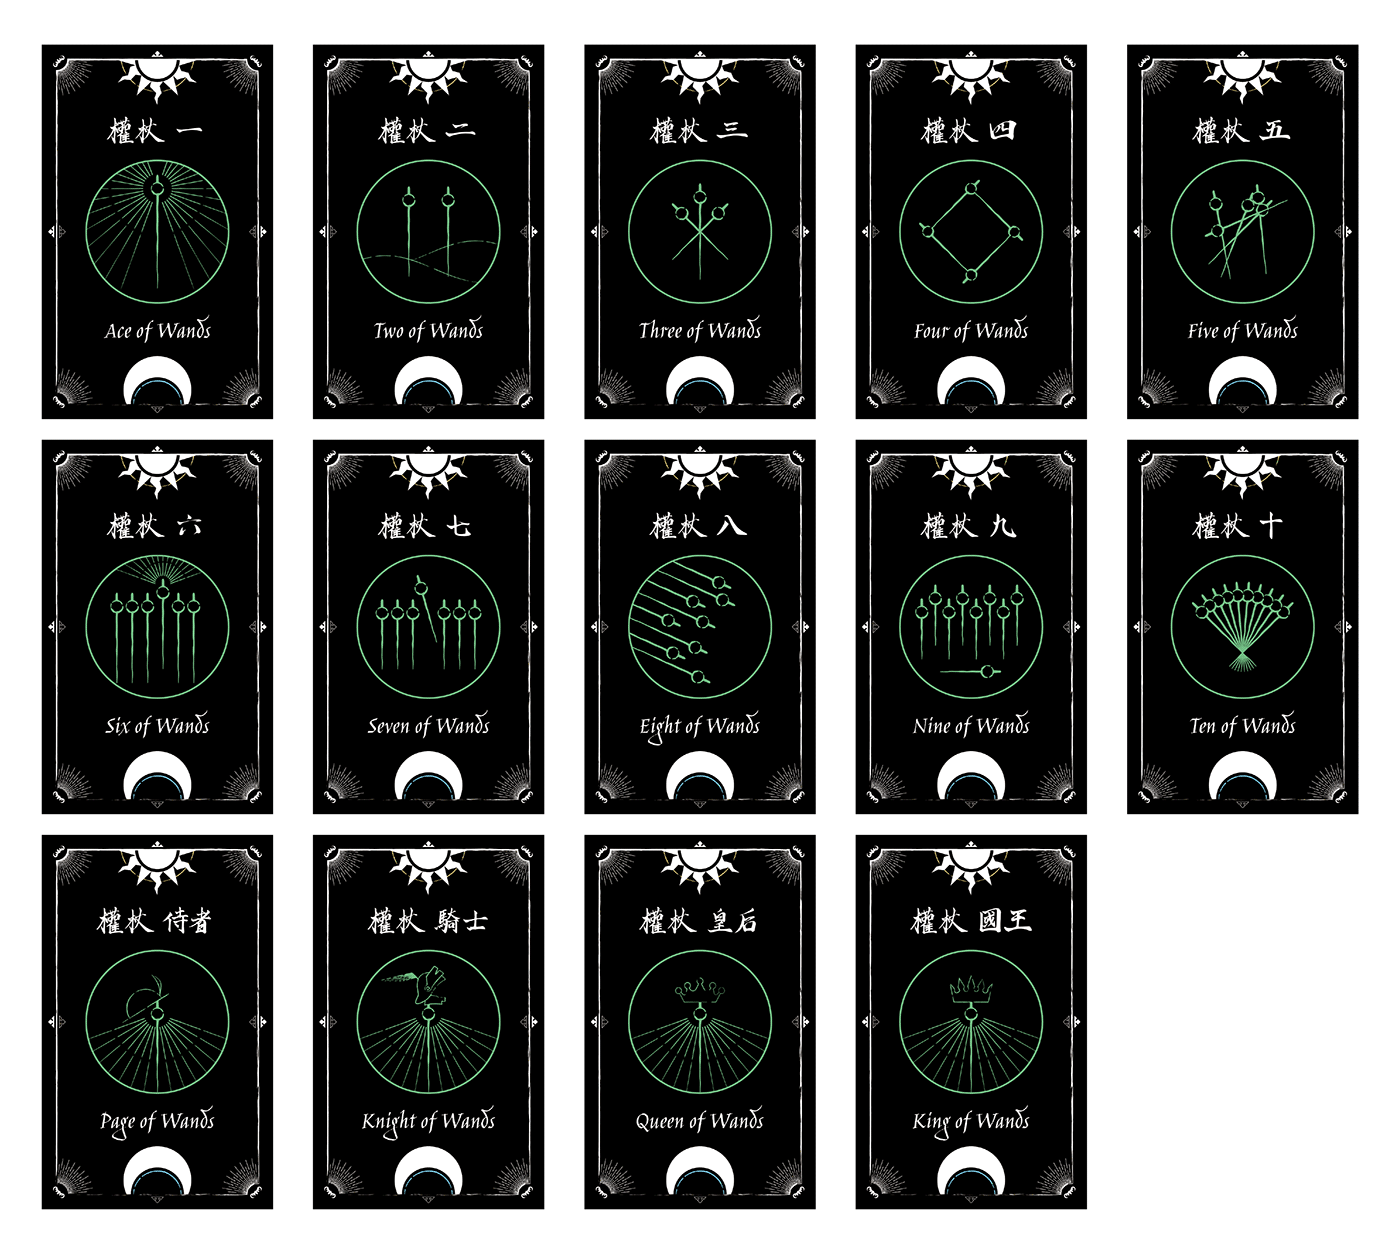 tarot tarotcards TarotDeck cards digital illustration abstract Calligraphy   carddesign